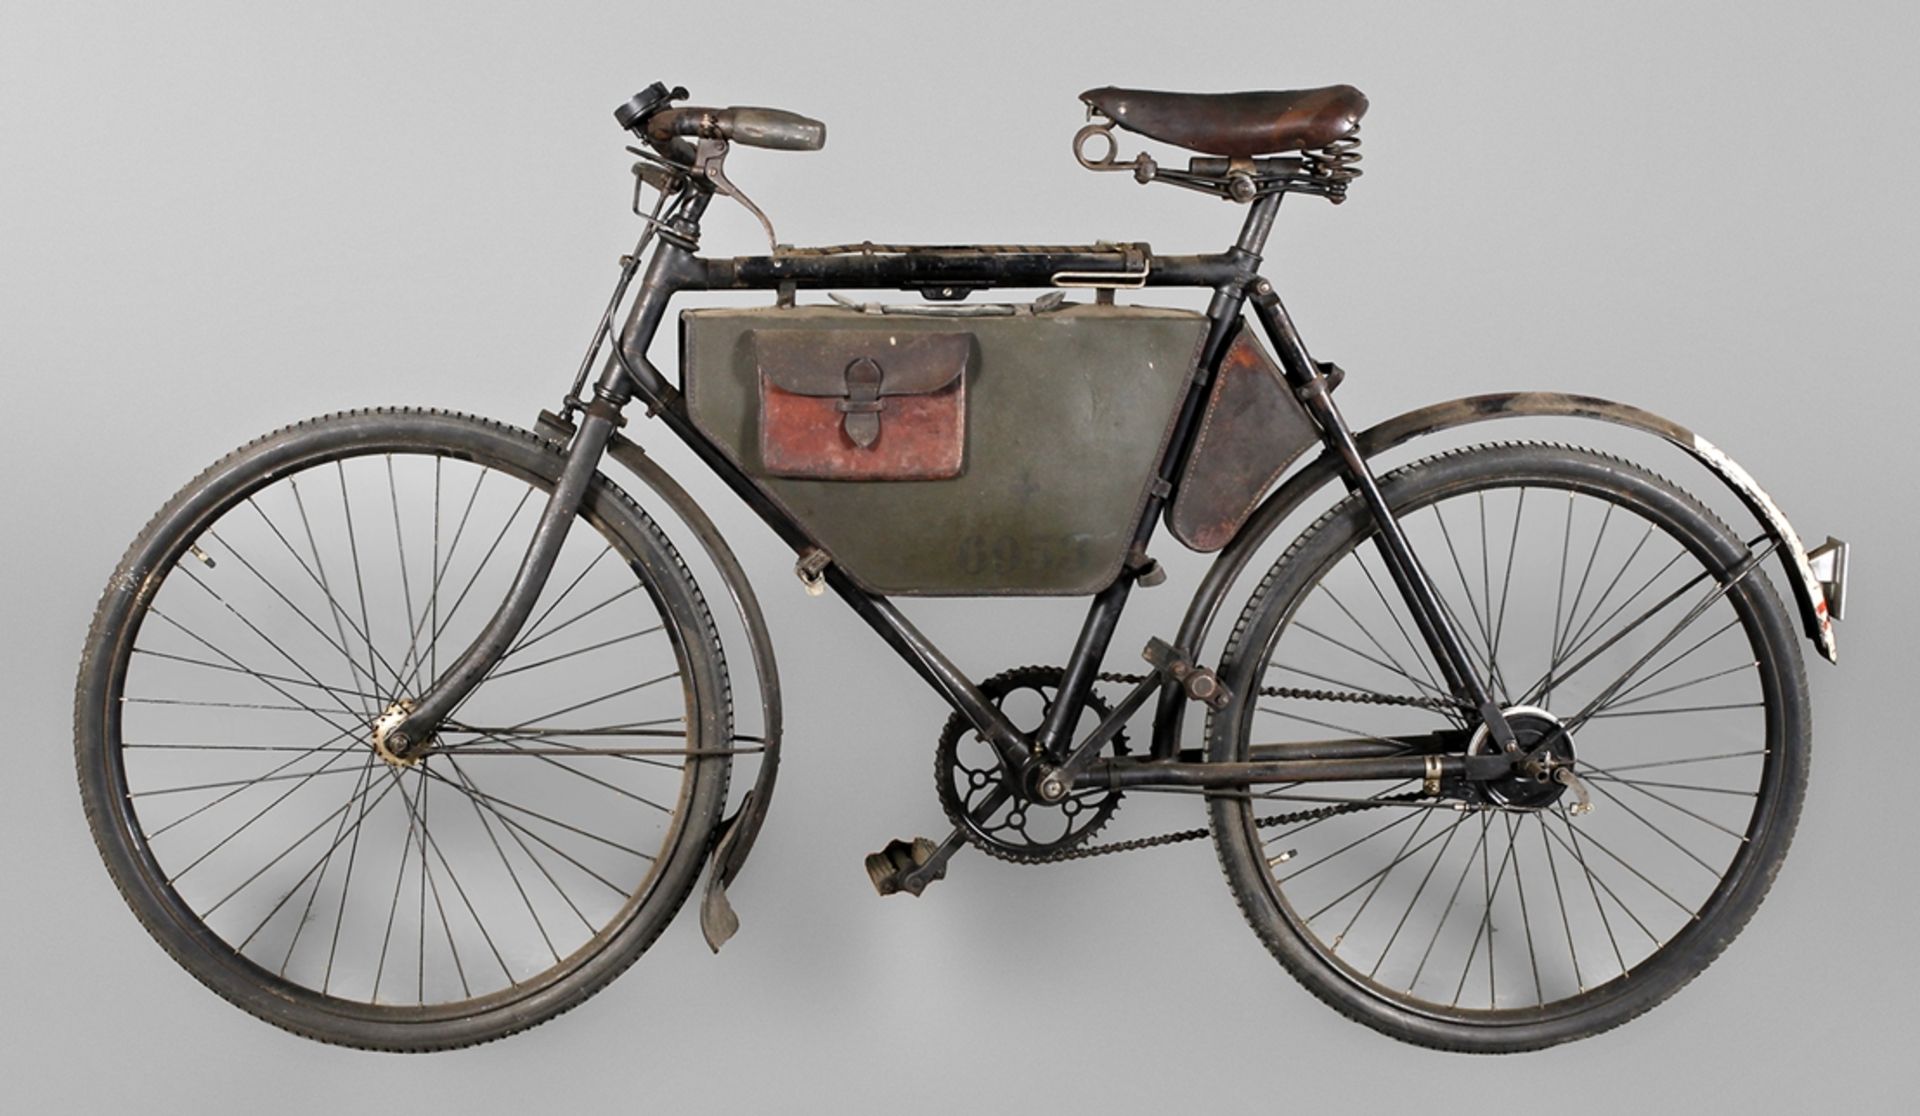 Schweizer Militärrad Marke Condor, datiert 1940, Rahmennummer 18944, original schwarz lackiert,